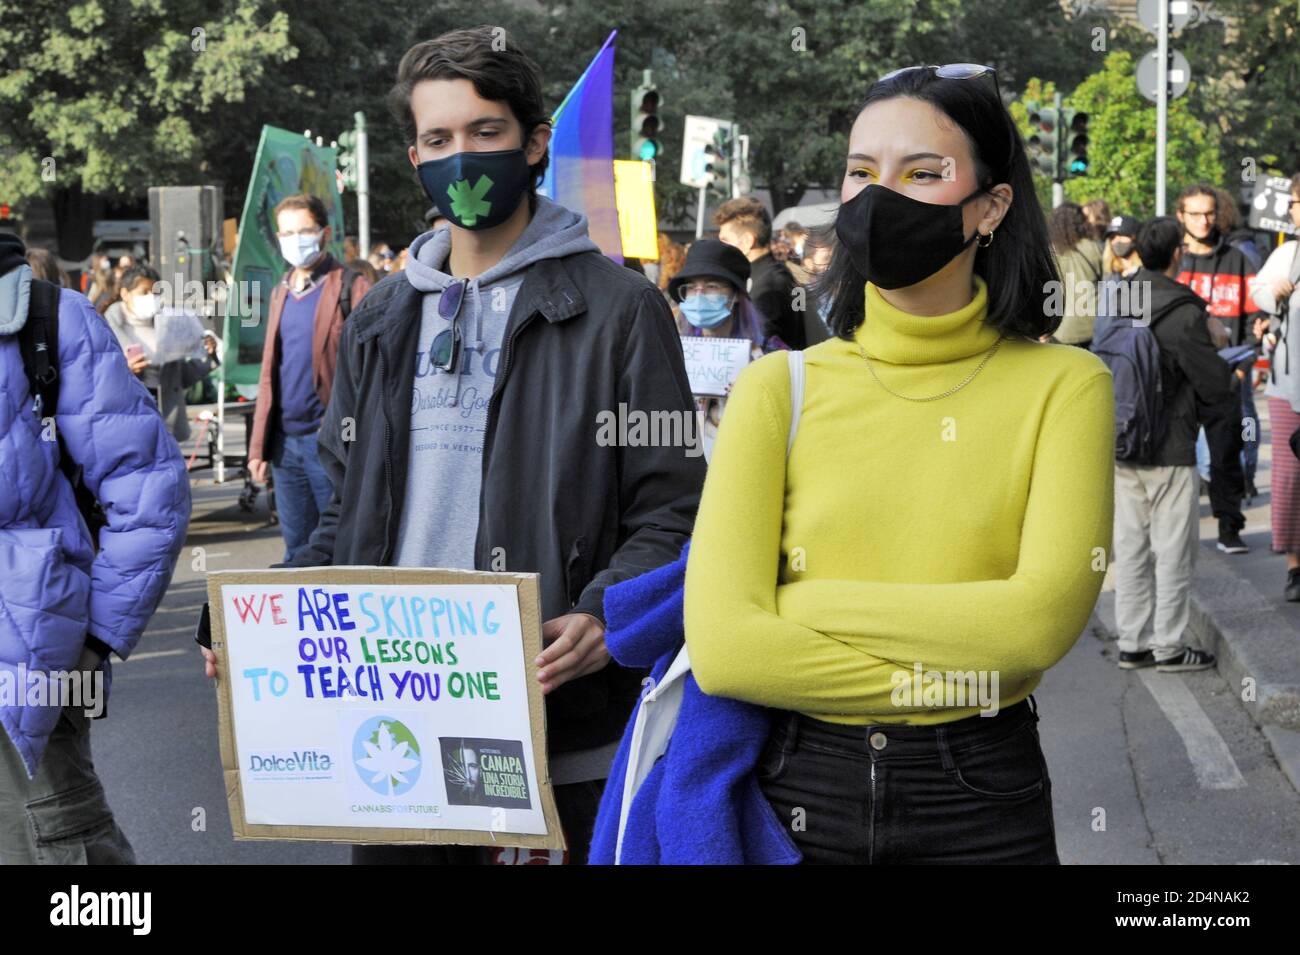 Milan (Italie), octobre 2020, les jeunes de vendredi pour l'avenir, après l'interruption due à l'épidémie de Covid 19, retournent dans les rues pour protester contre le changement climatique, en essayant de respecter les mesures de sécurité heuristiques. Banque D'Images